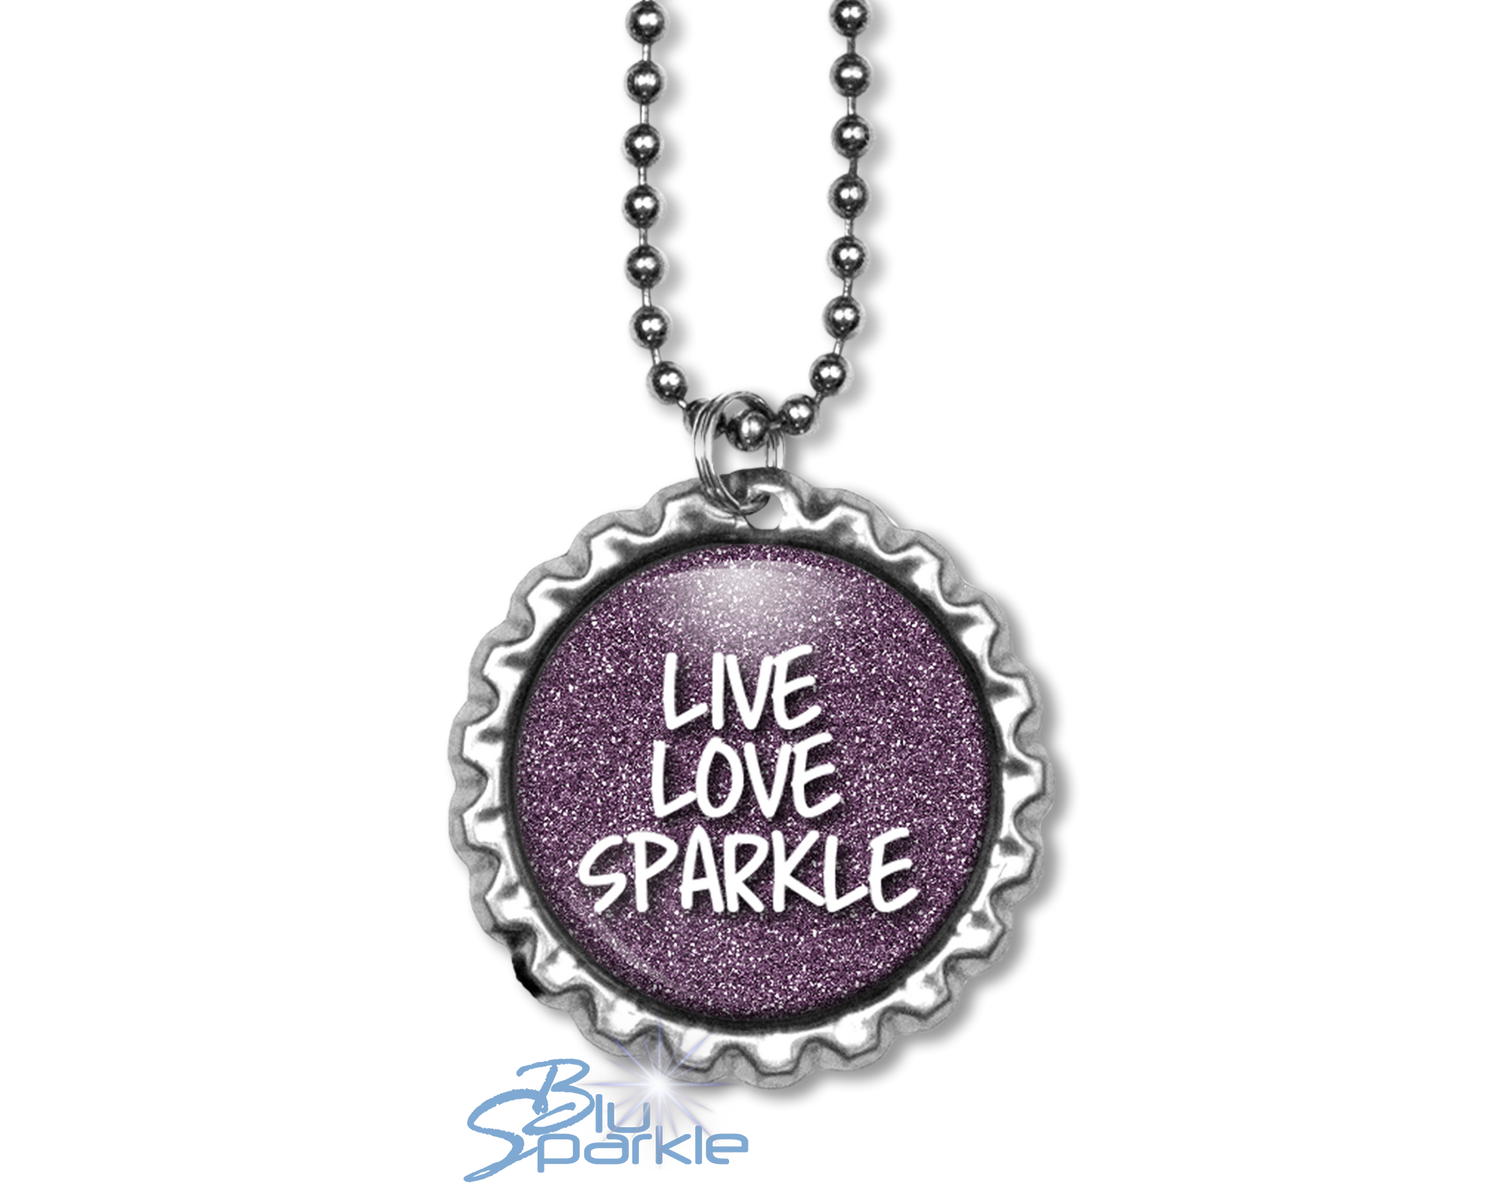 Bottlecap "Live Love Sparkle" Round Pendants